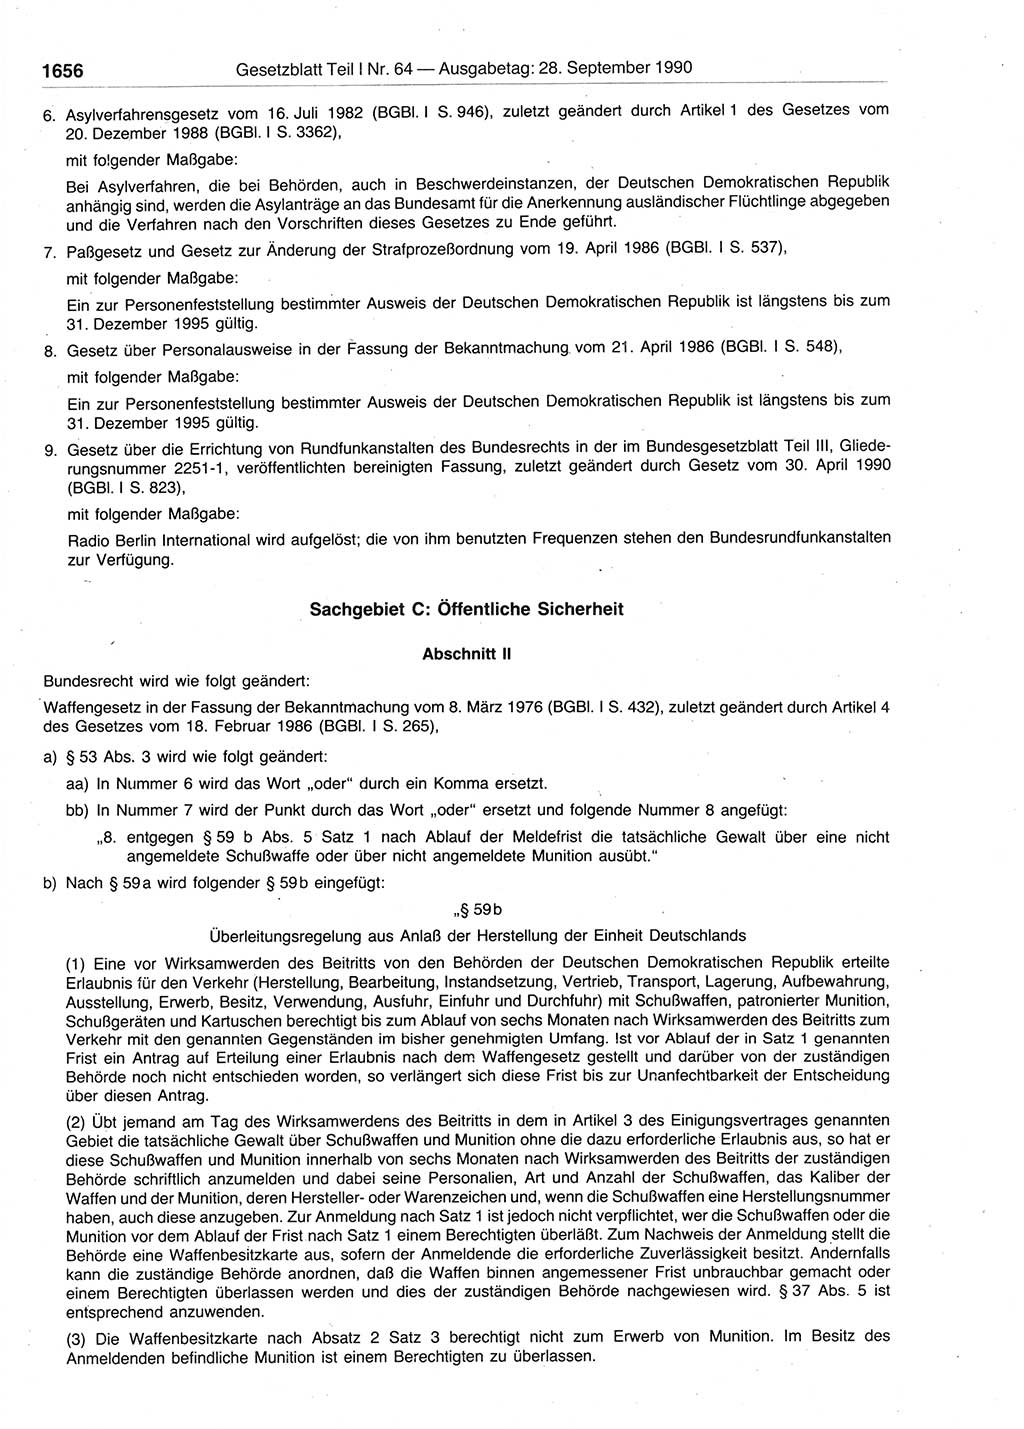 Gesetzblatt (GBl.) der Deutschen Demokratischen Republik (DDR) Teil Ⅰ 1990, Seite 1656 (GBl. DDR Ⅰ 1990, S. 1656)